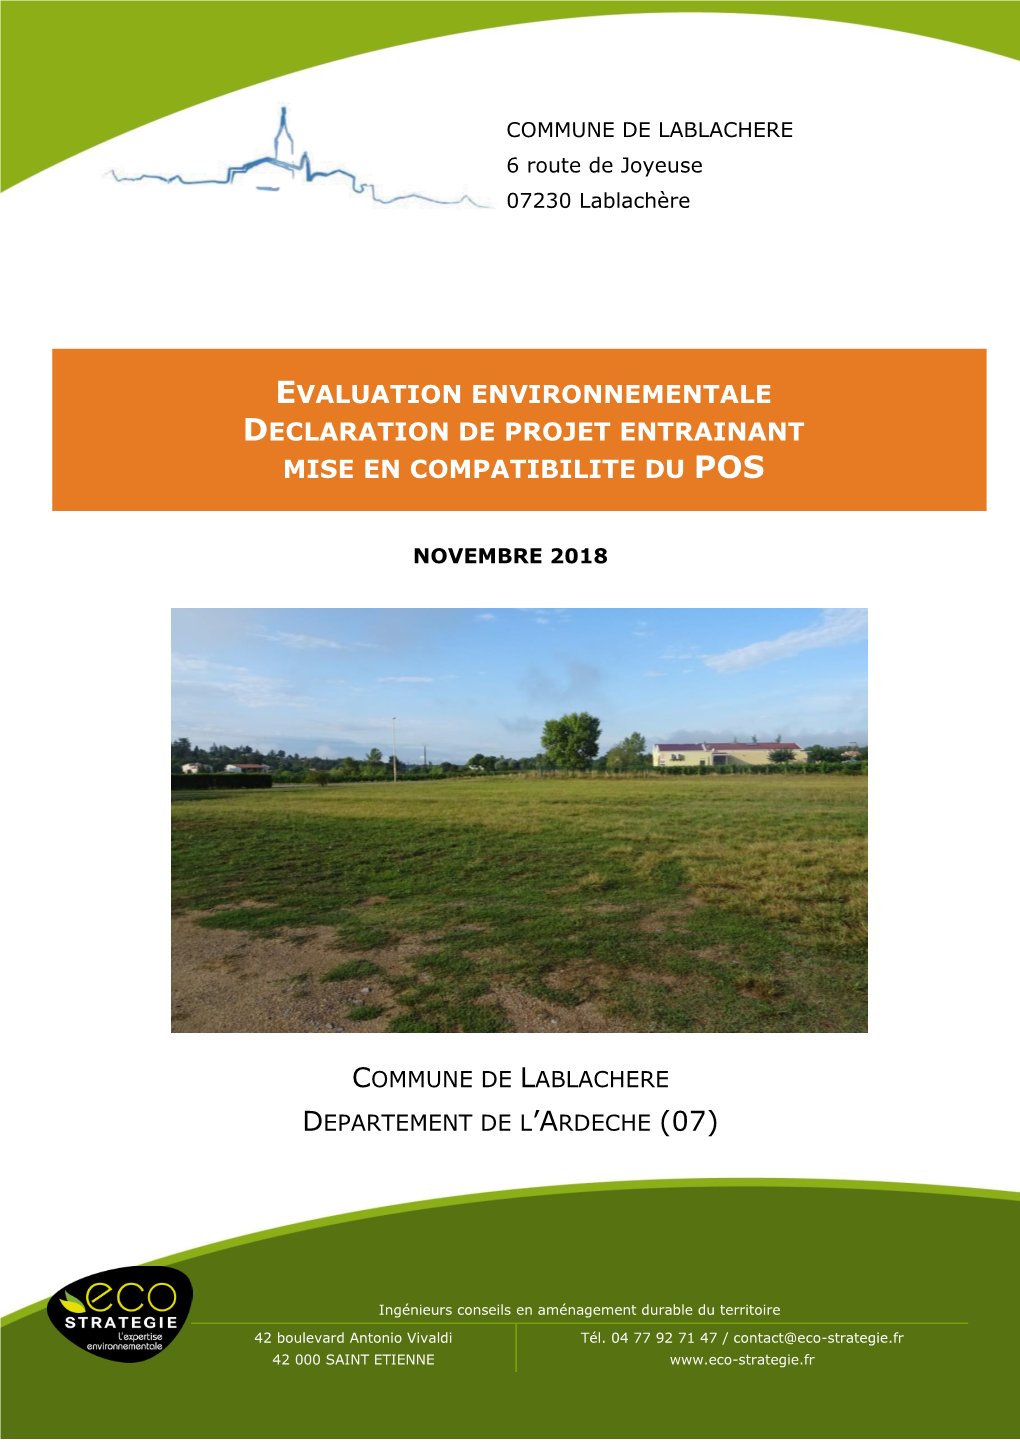 Evaluation Environnementale Declaration De Projet Entrainant Mise En Compatibilite Du Pos